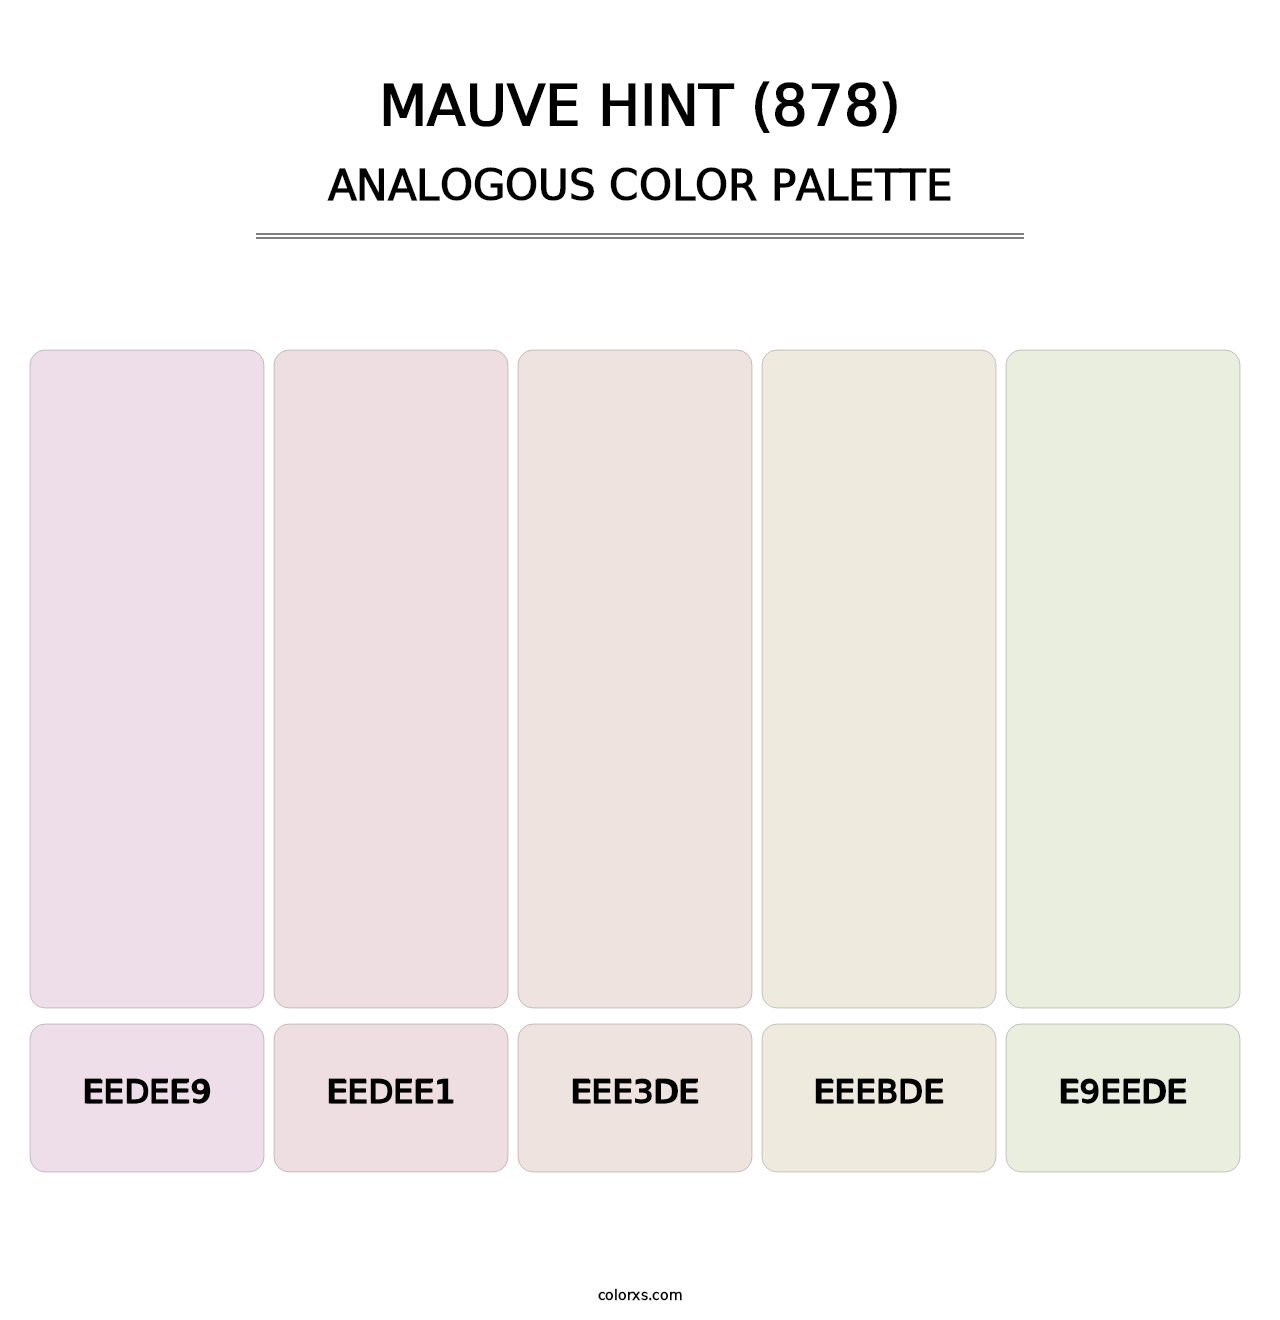 Mauve Hint (878) - Analogous Color Palette